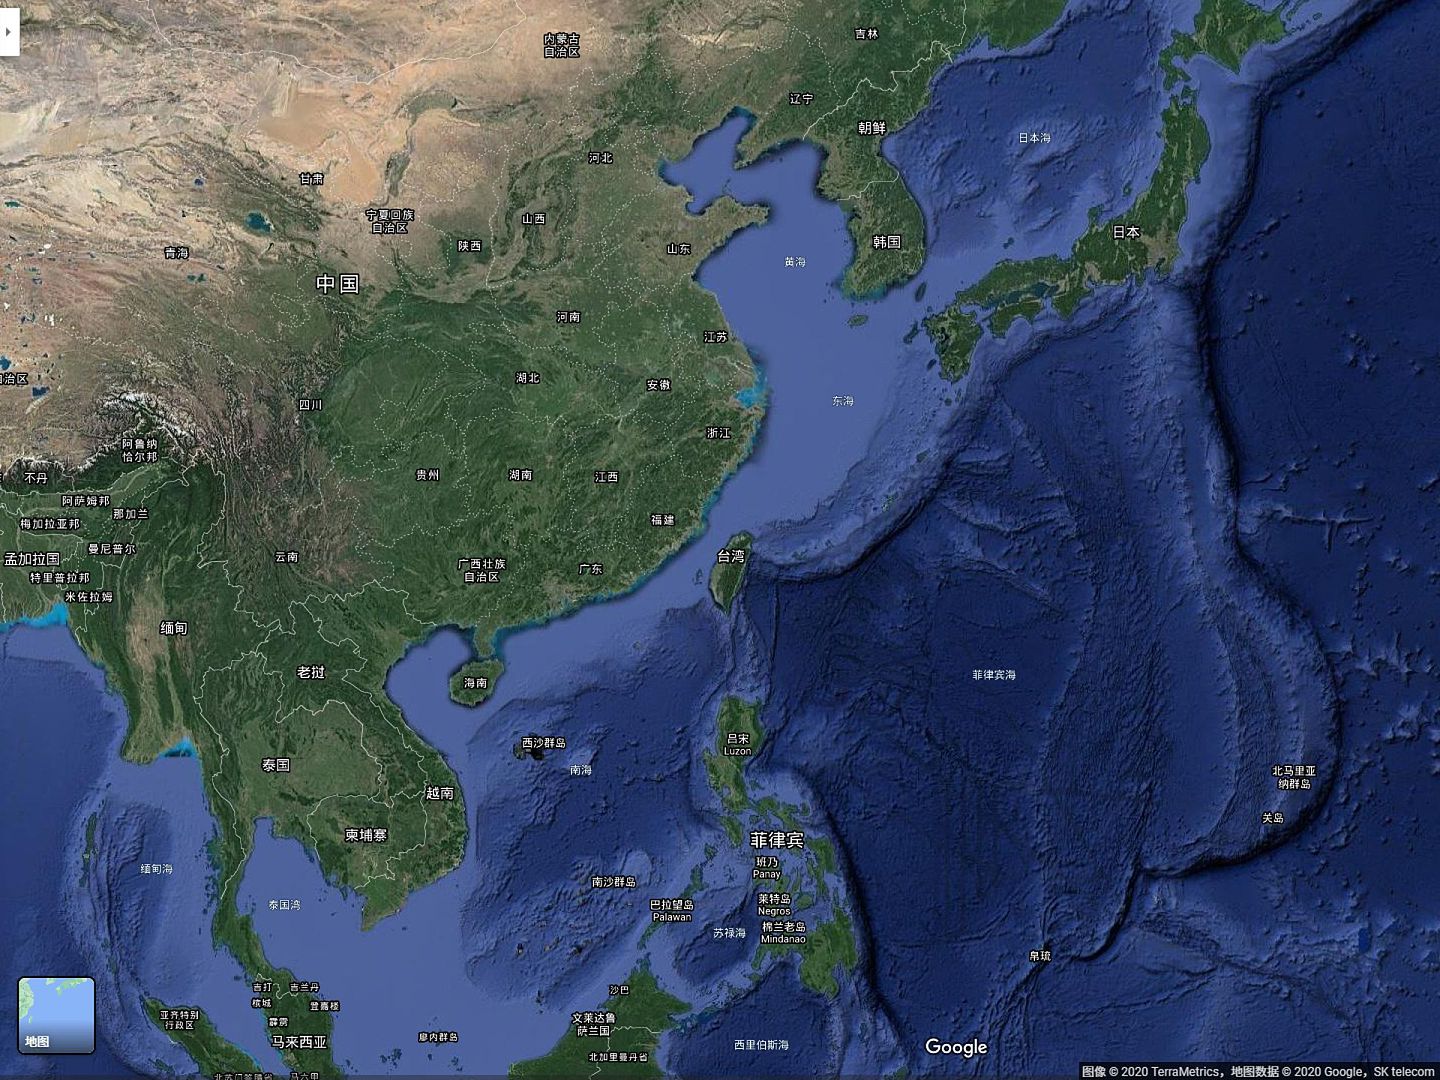 中国周边四大海域，渤海、黄海、东海及南海北部均为大陆架及其延伸，平均水深不足百米，不适宜潜艇尤其是大型潜艇活动。南海中央海盆则不同，平均水深在千米以上，适宜潜艇活动。台湾西南海域正位于南海中央海盆北部。图为中国周边海域图，蓝色的深浅代表海水的深度，颜色越深海水越深。（谷歌地图截图）